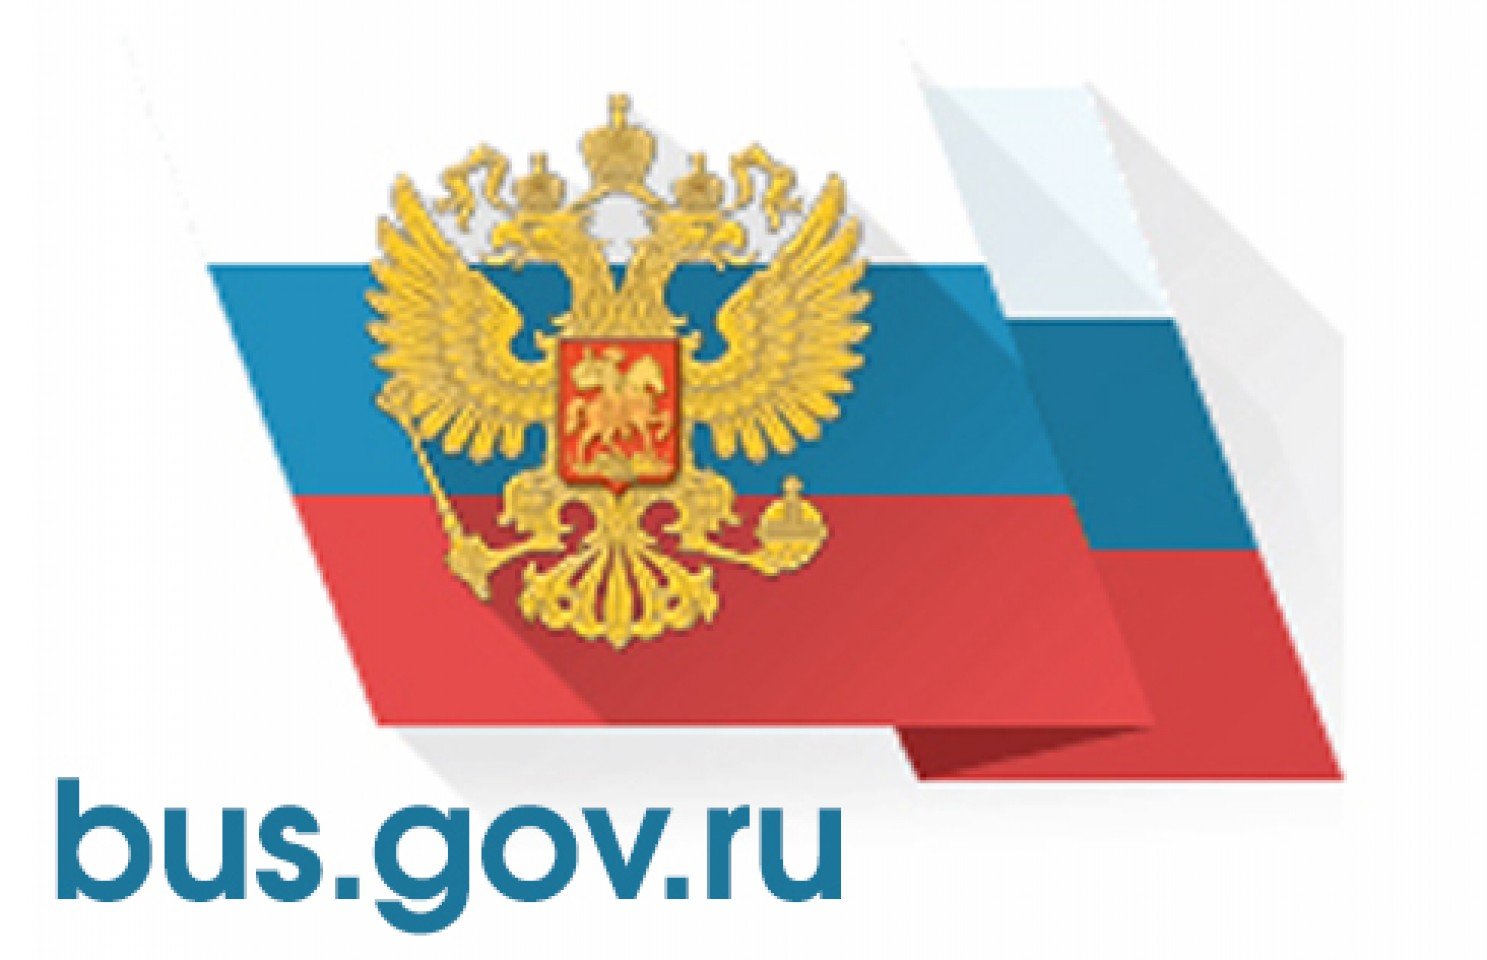 Https cc gov ru. Бас гов. Bus.gov.ru баннер. Bus.gov.ru логотип. Gov.ru.